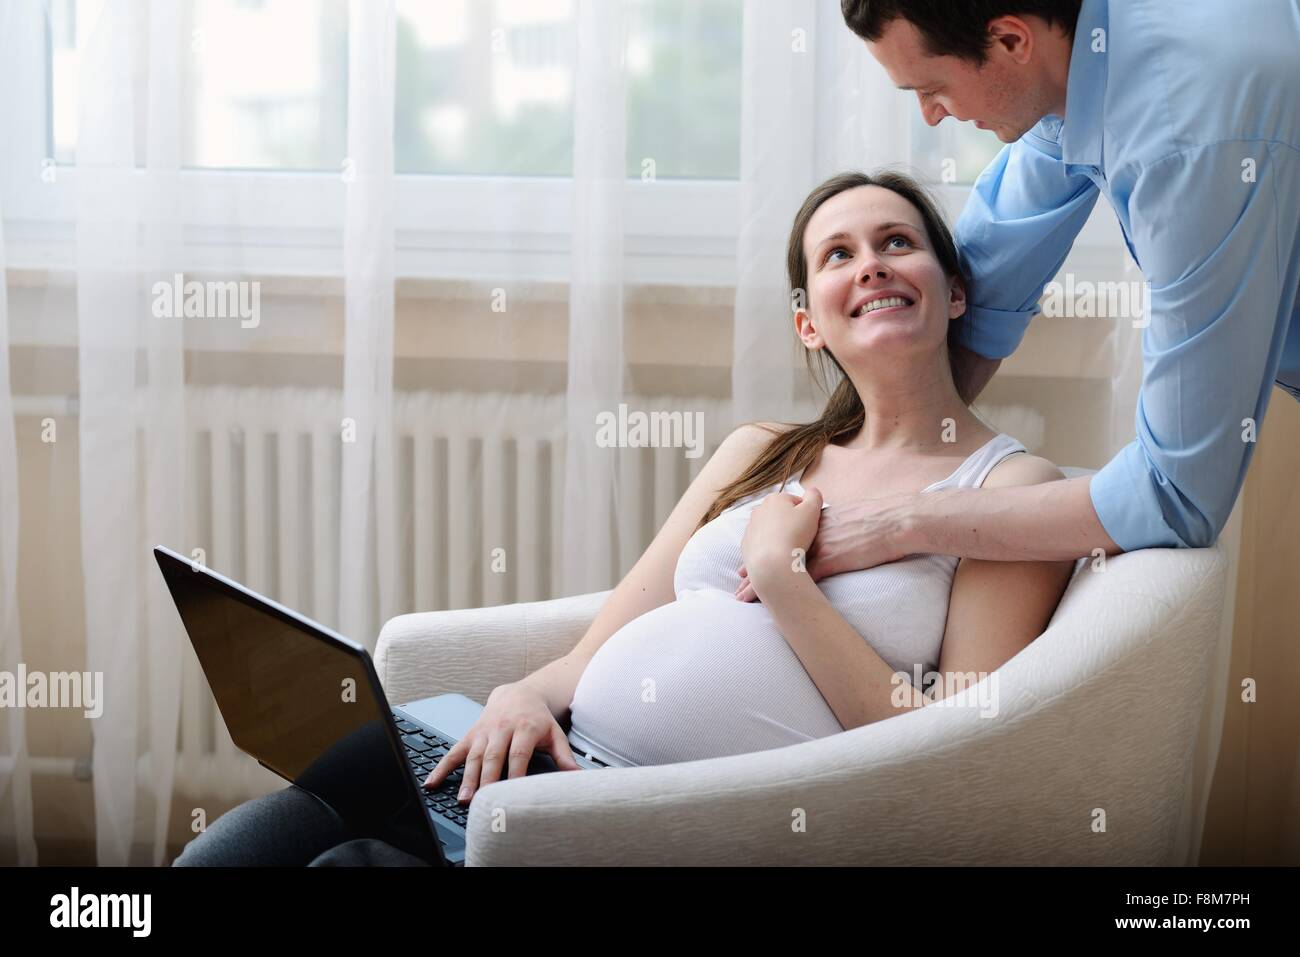 Mujer embarazada sentada en una silla, con laptop, marido sosteniendo su mano Foto de stock